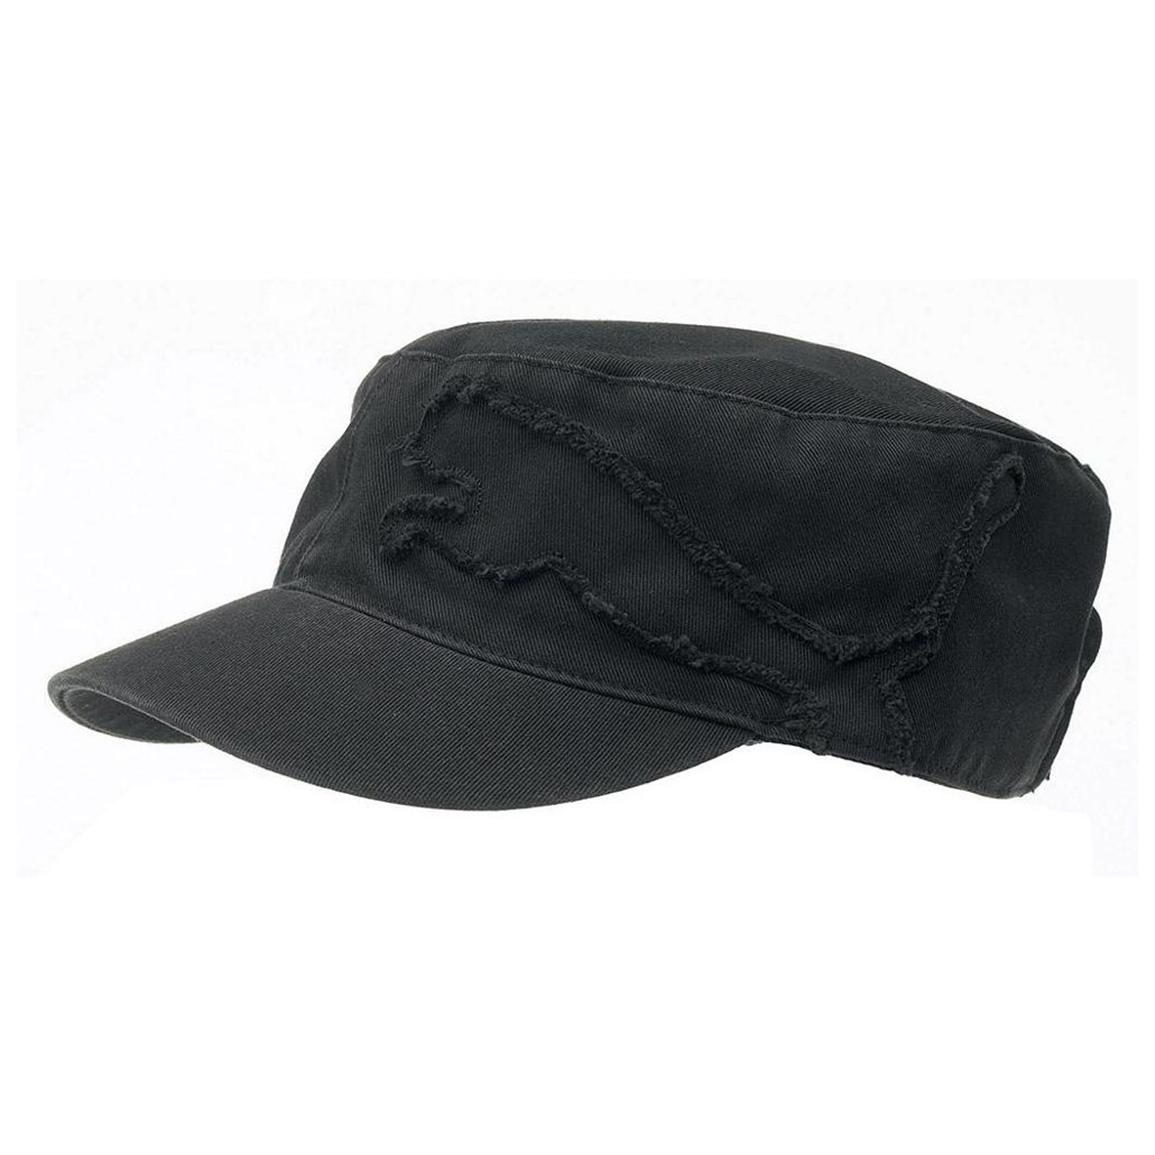 Puma® Military Cap - 149456, Hats 